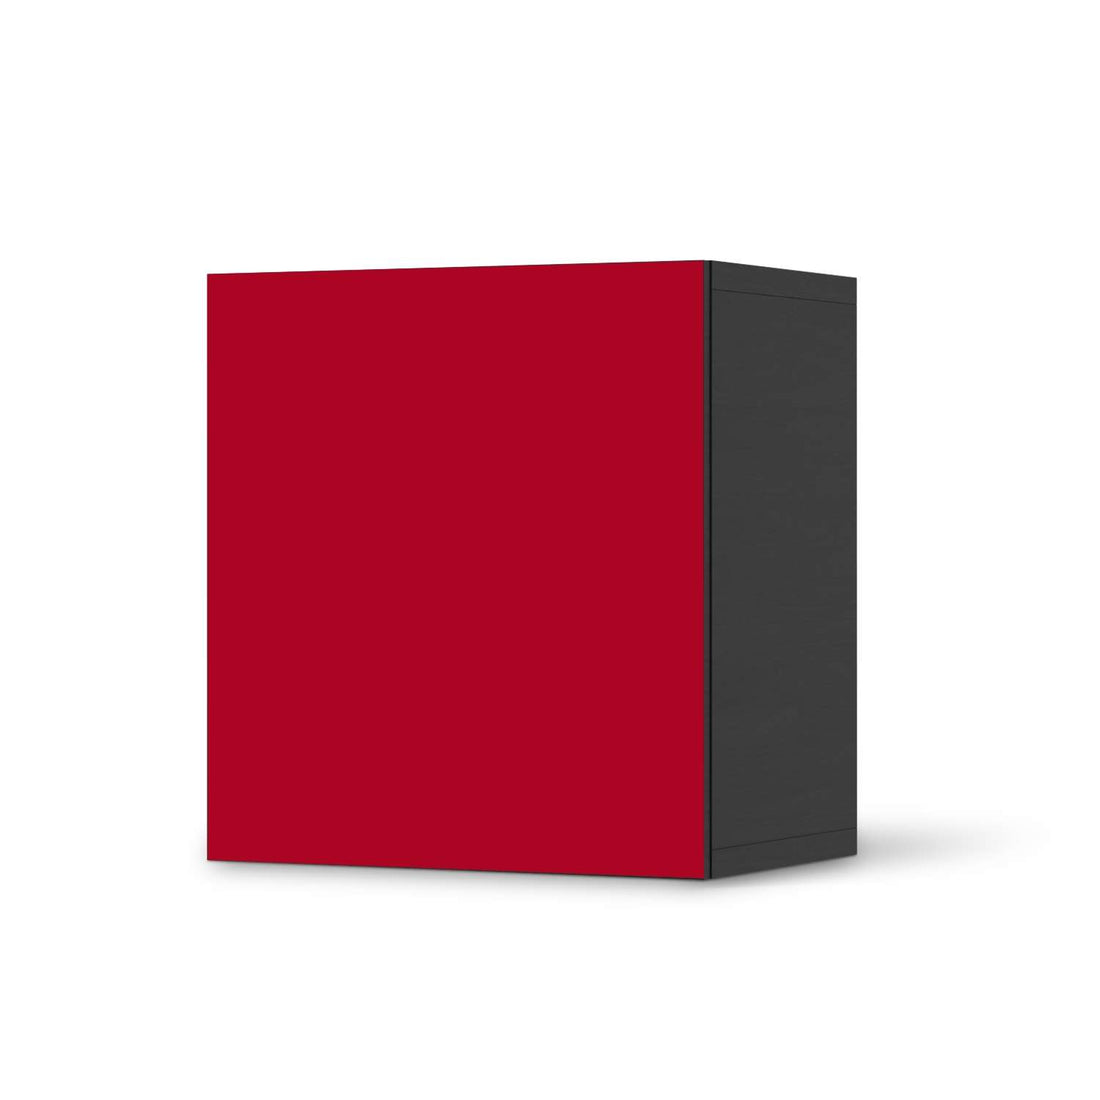 Klebefolie für Möbel Rot Dark - IKEA Besta Regal 1 Türe - schwarz